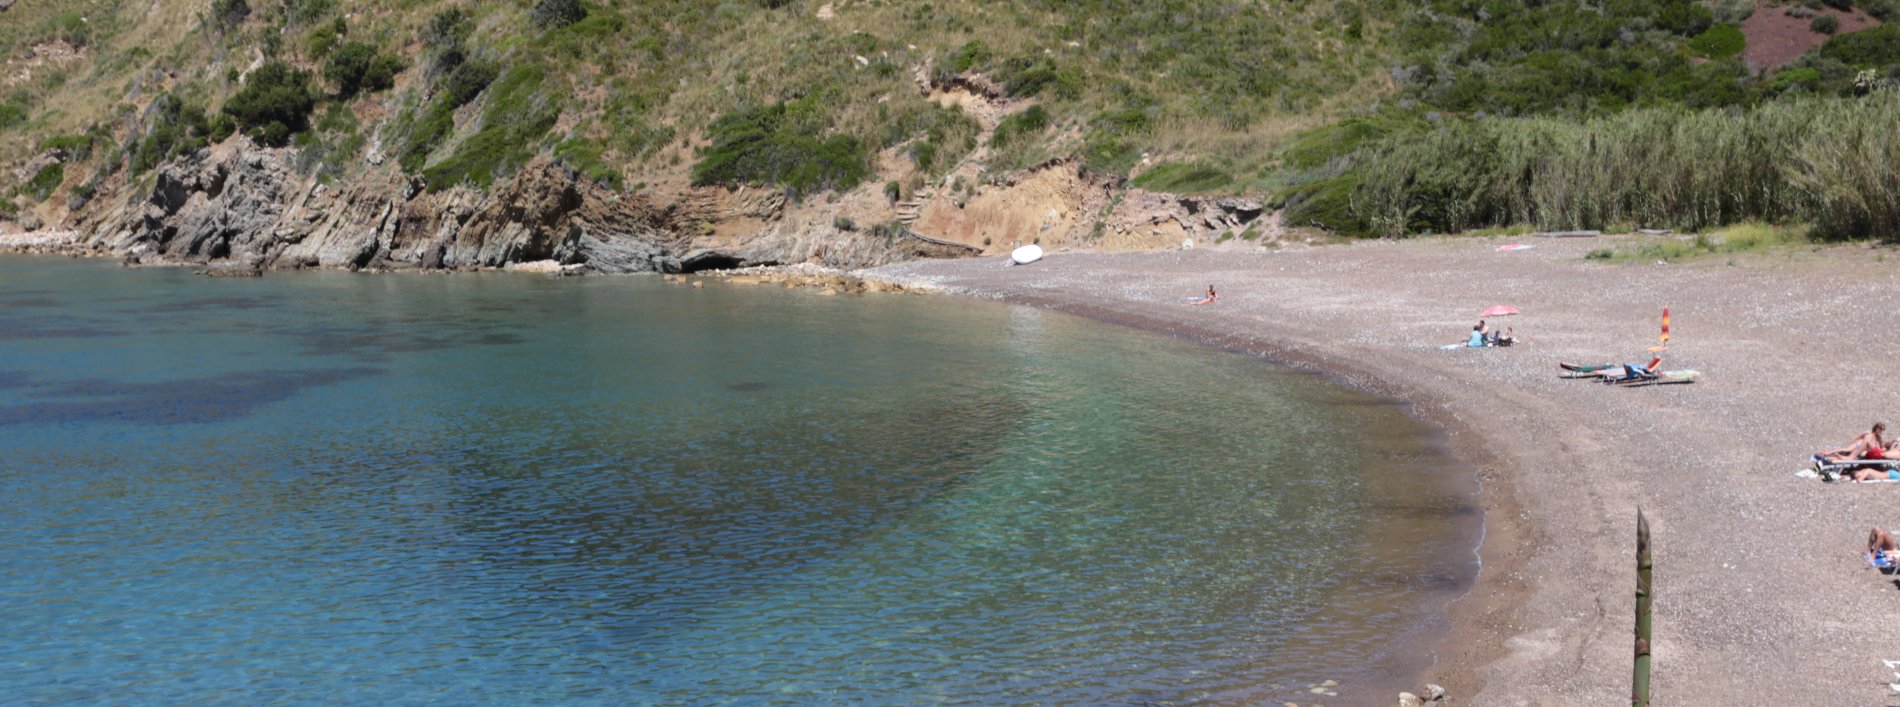 Immagine testata Ville e Villette Rio nell'Elba